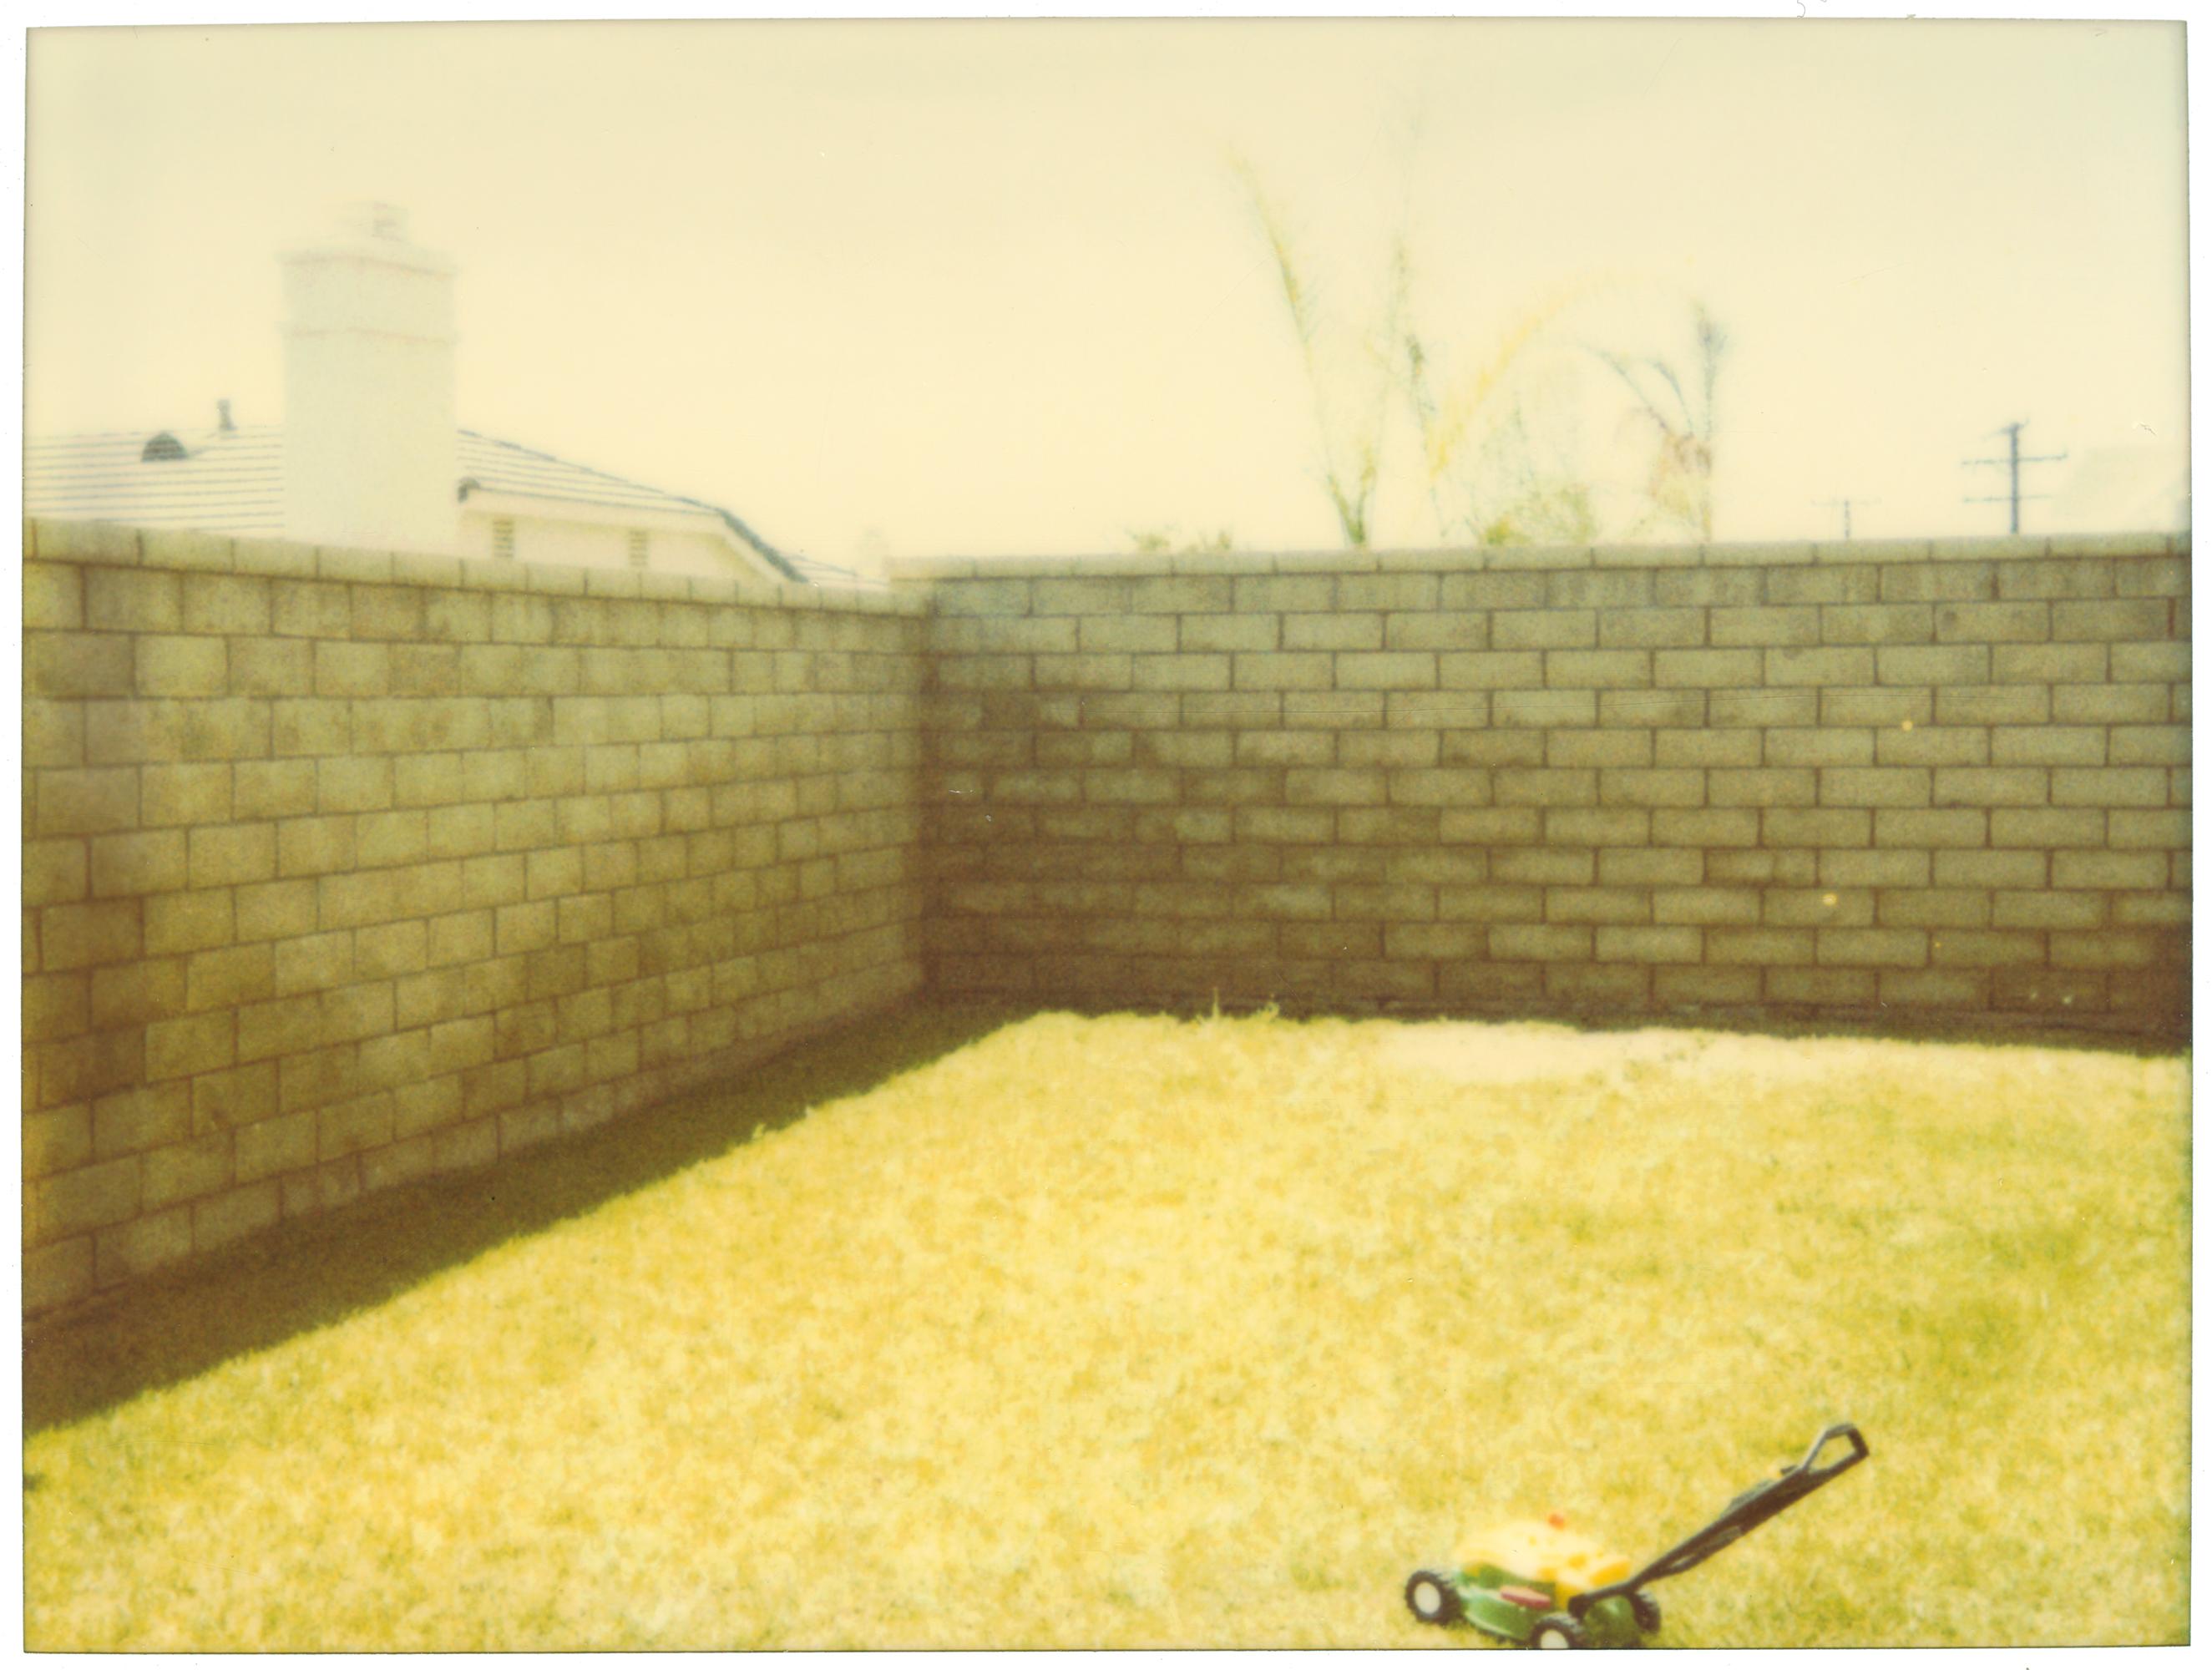 Suburbia, analog, mounted. Polaroid, photograph, 21st Century, landscape,  1